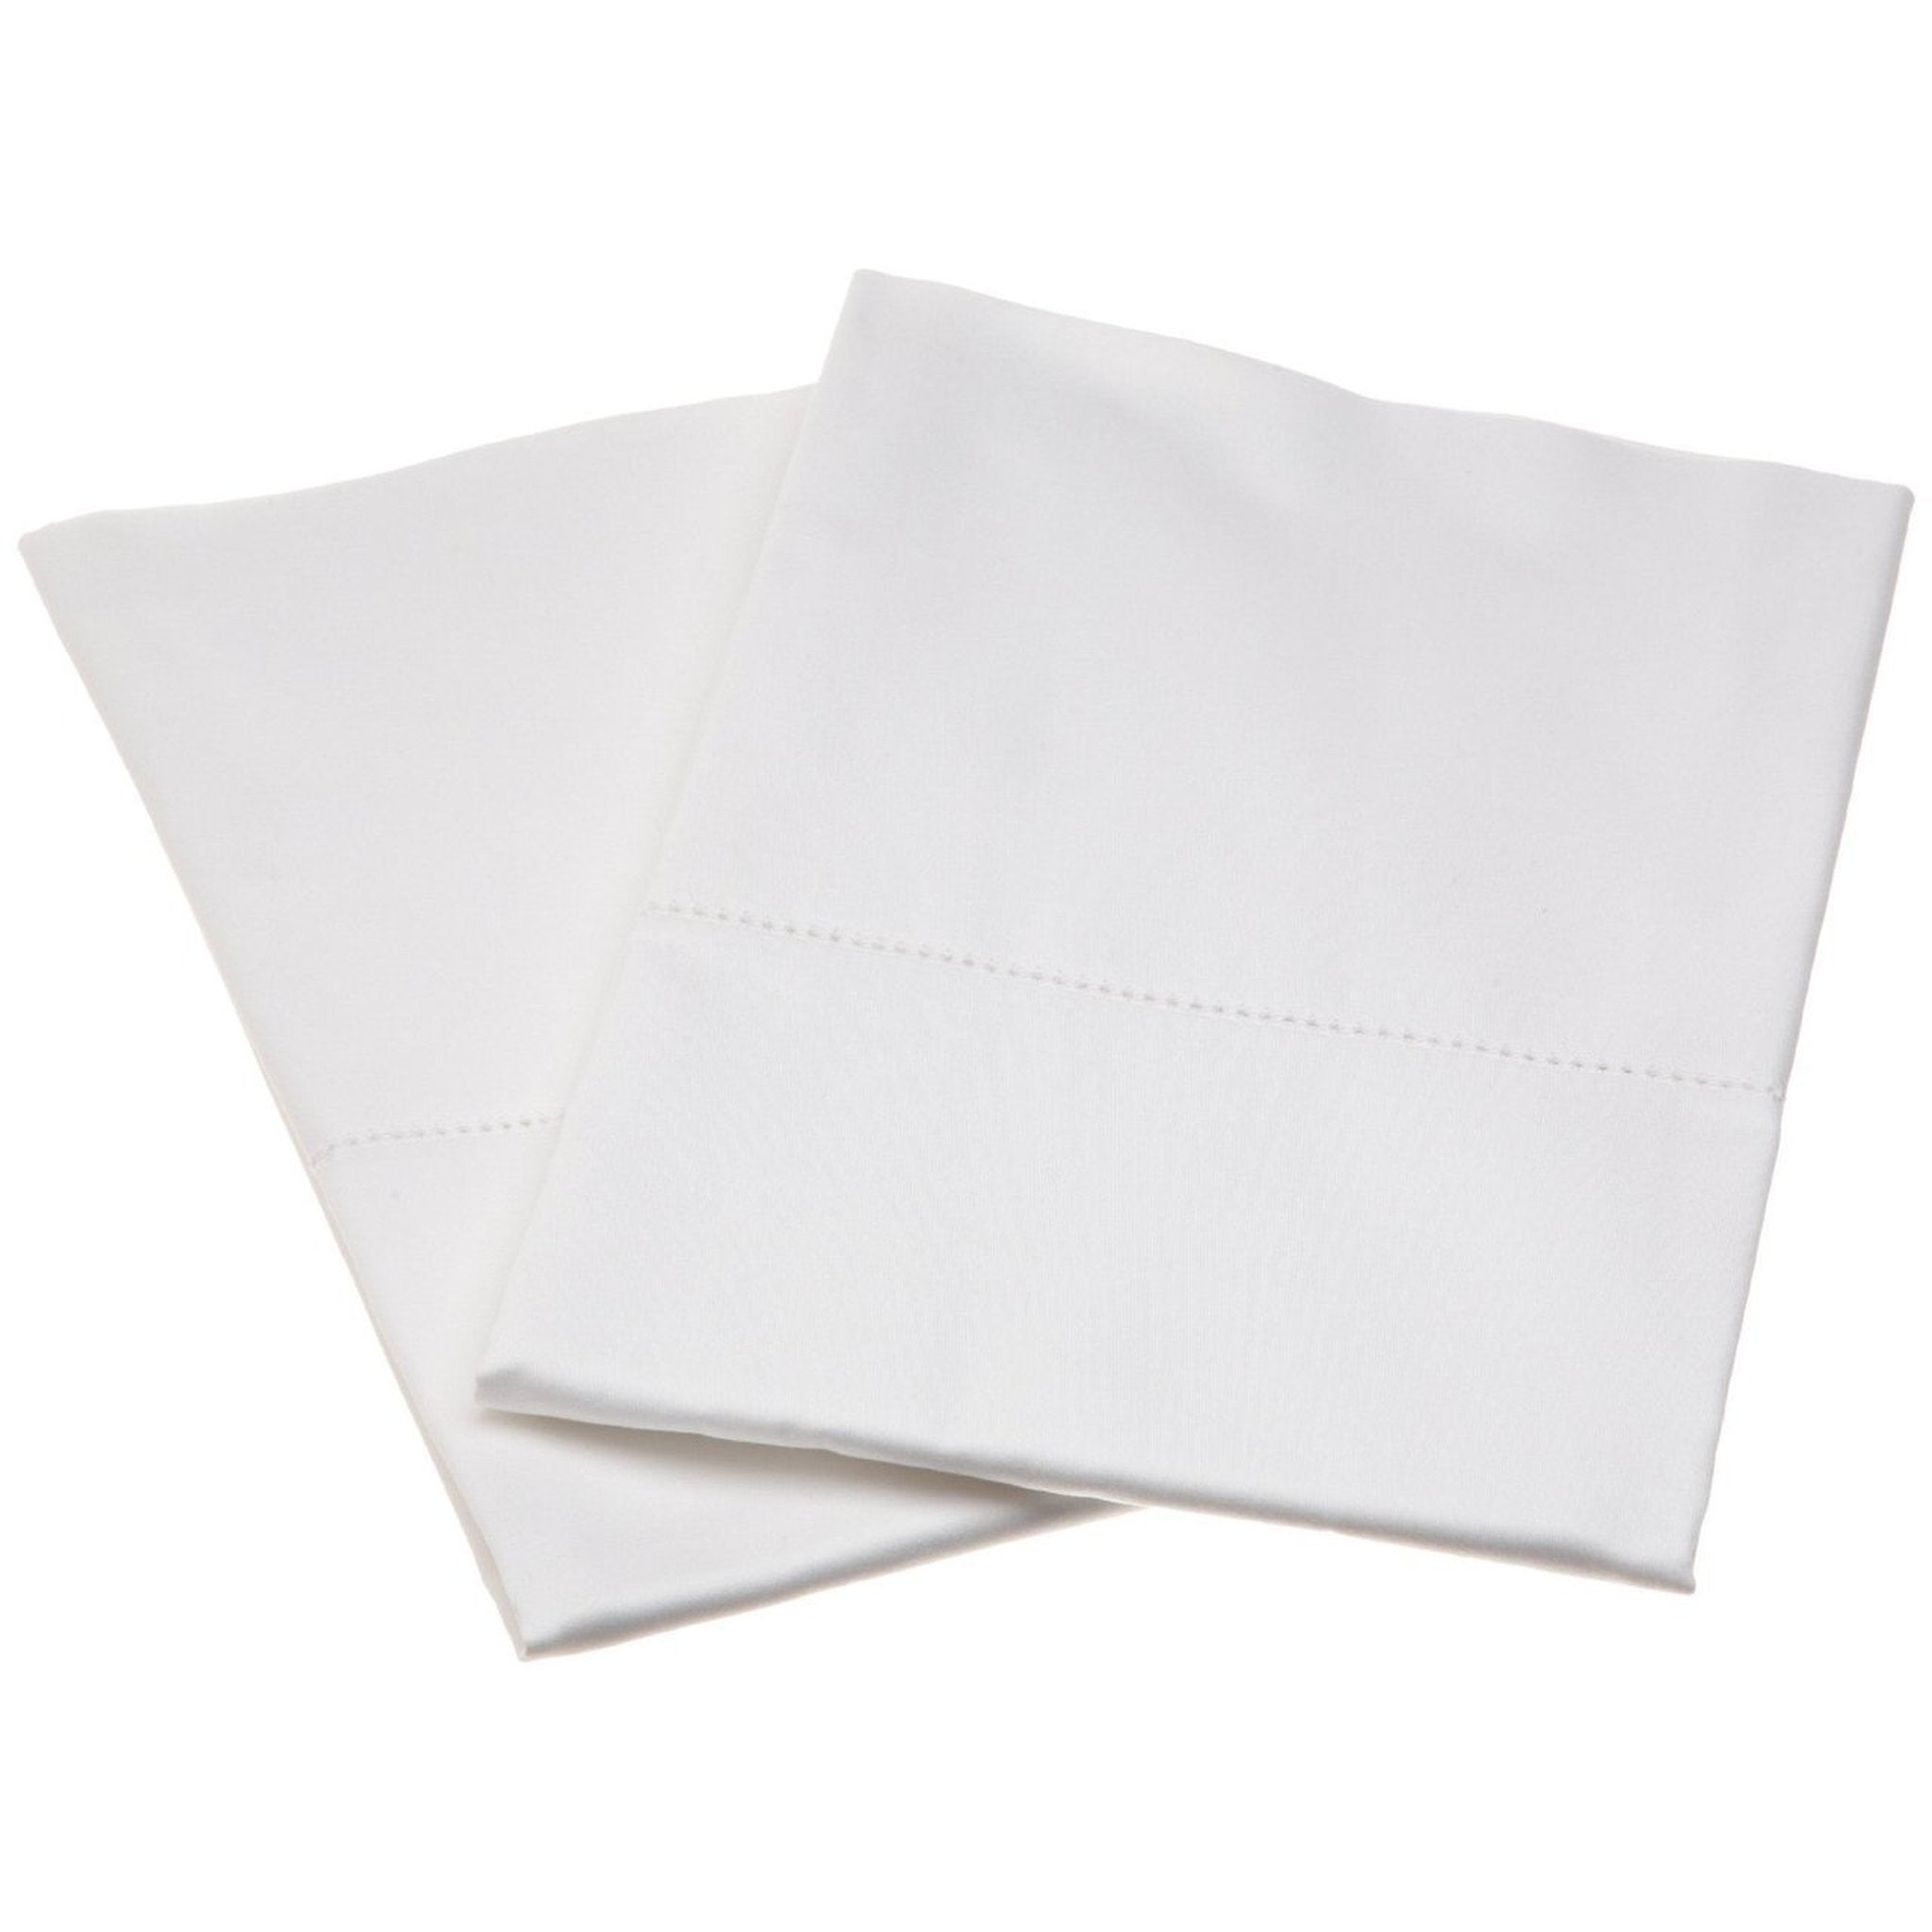 DVALA white, Pillowcase, 50x80 cm - IKEA